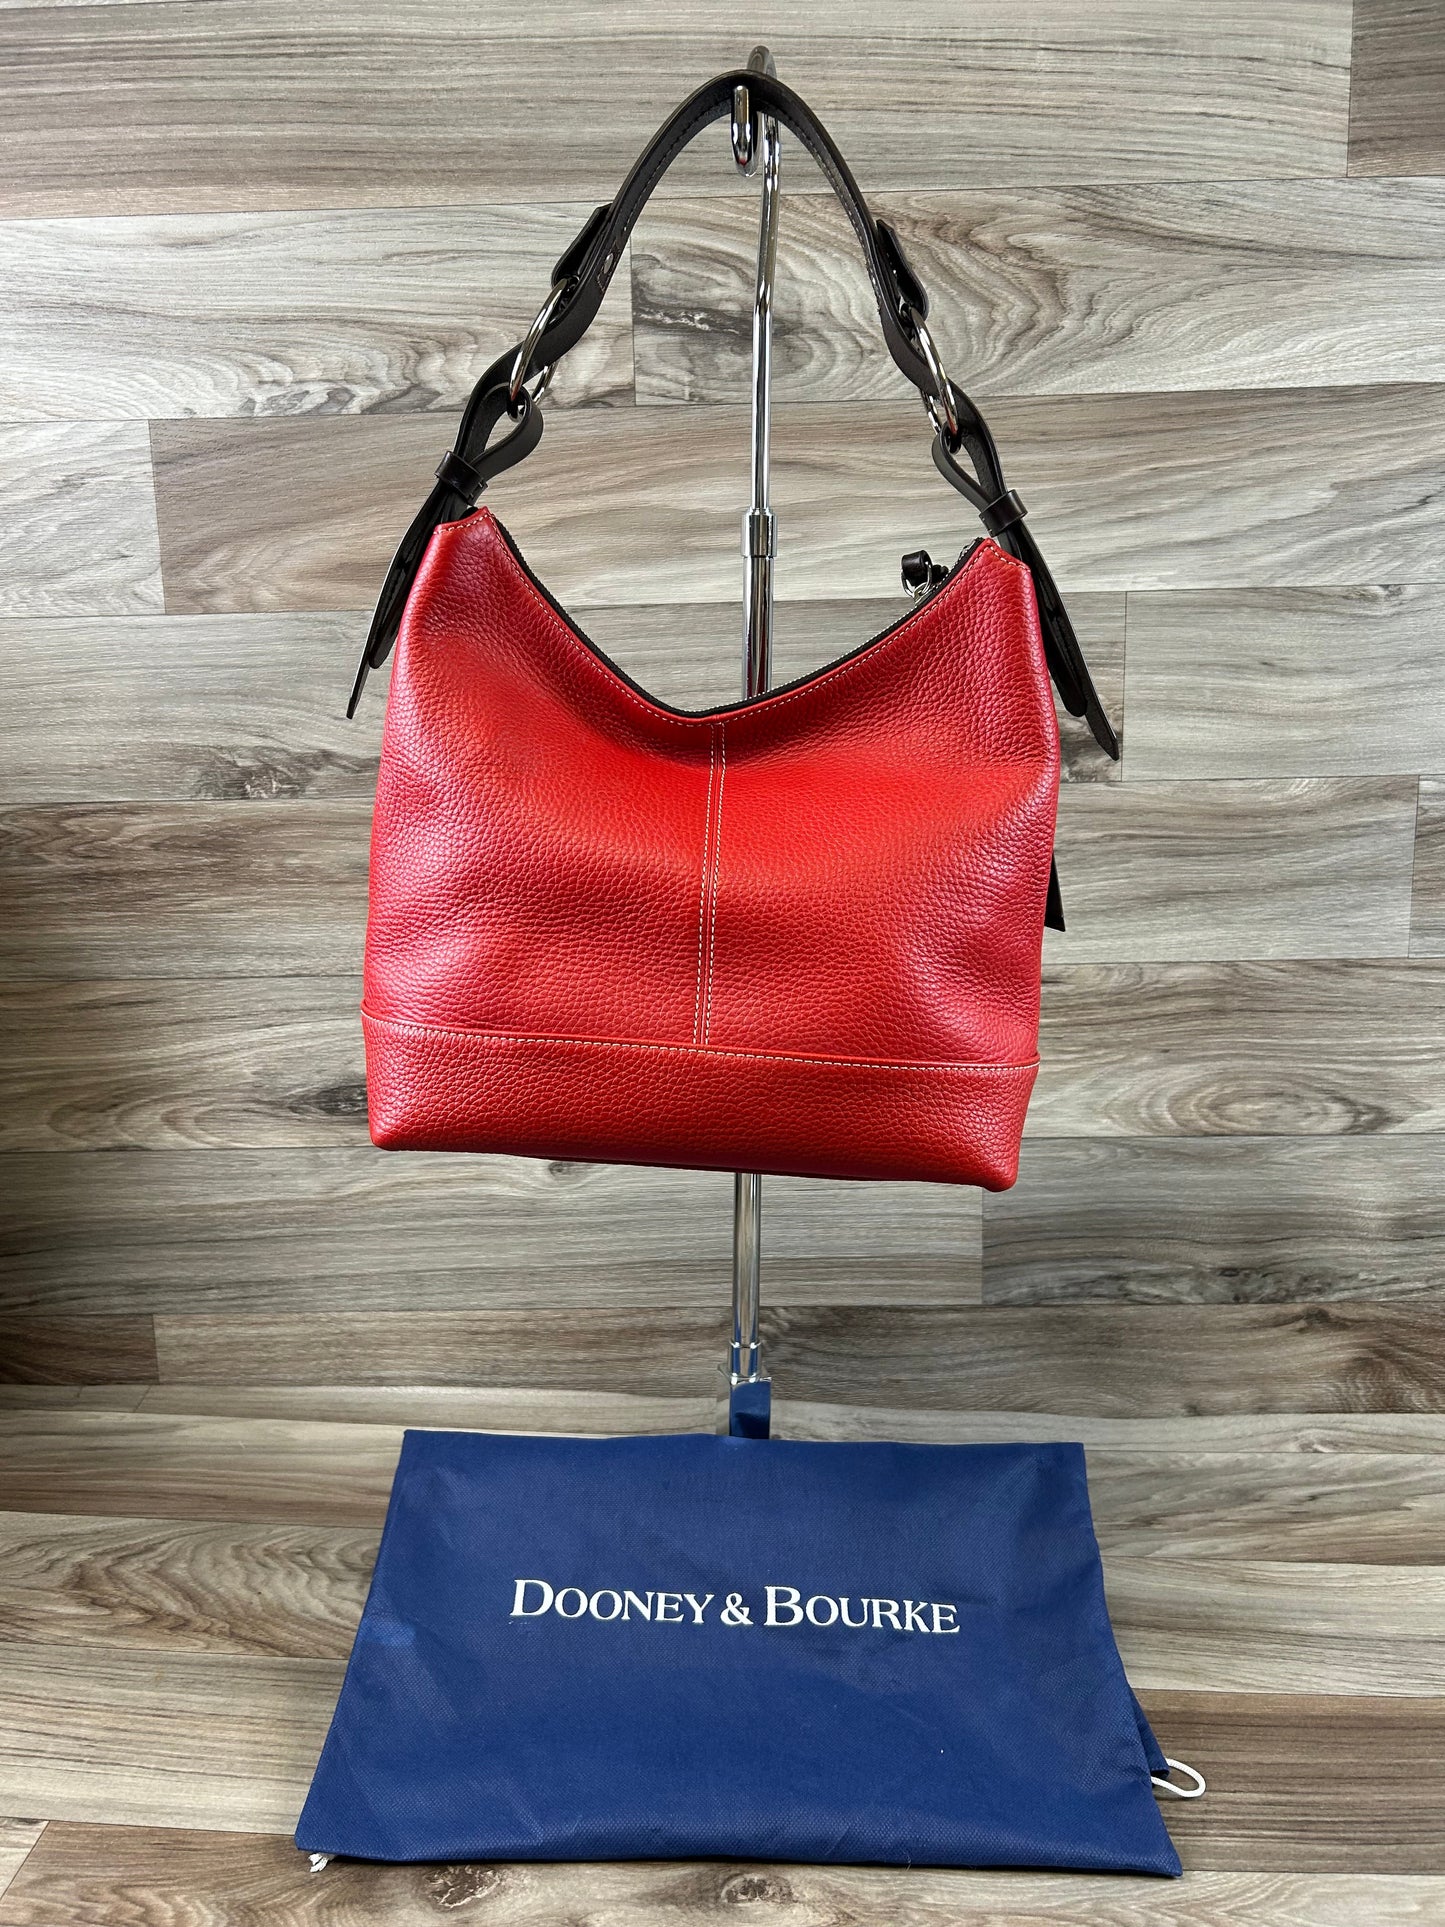 Handbag Designer Dooney And Bourke, Size Large